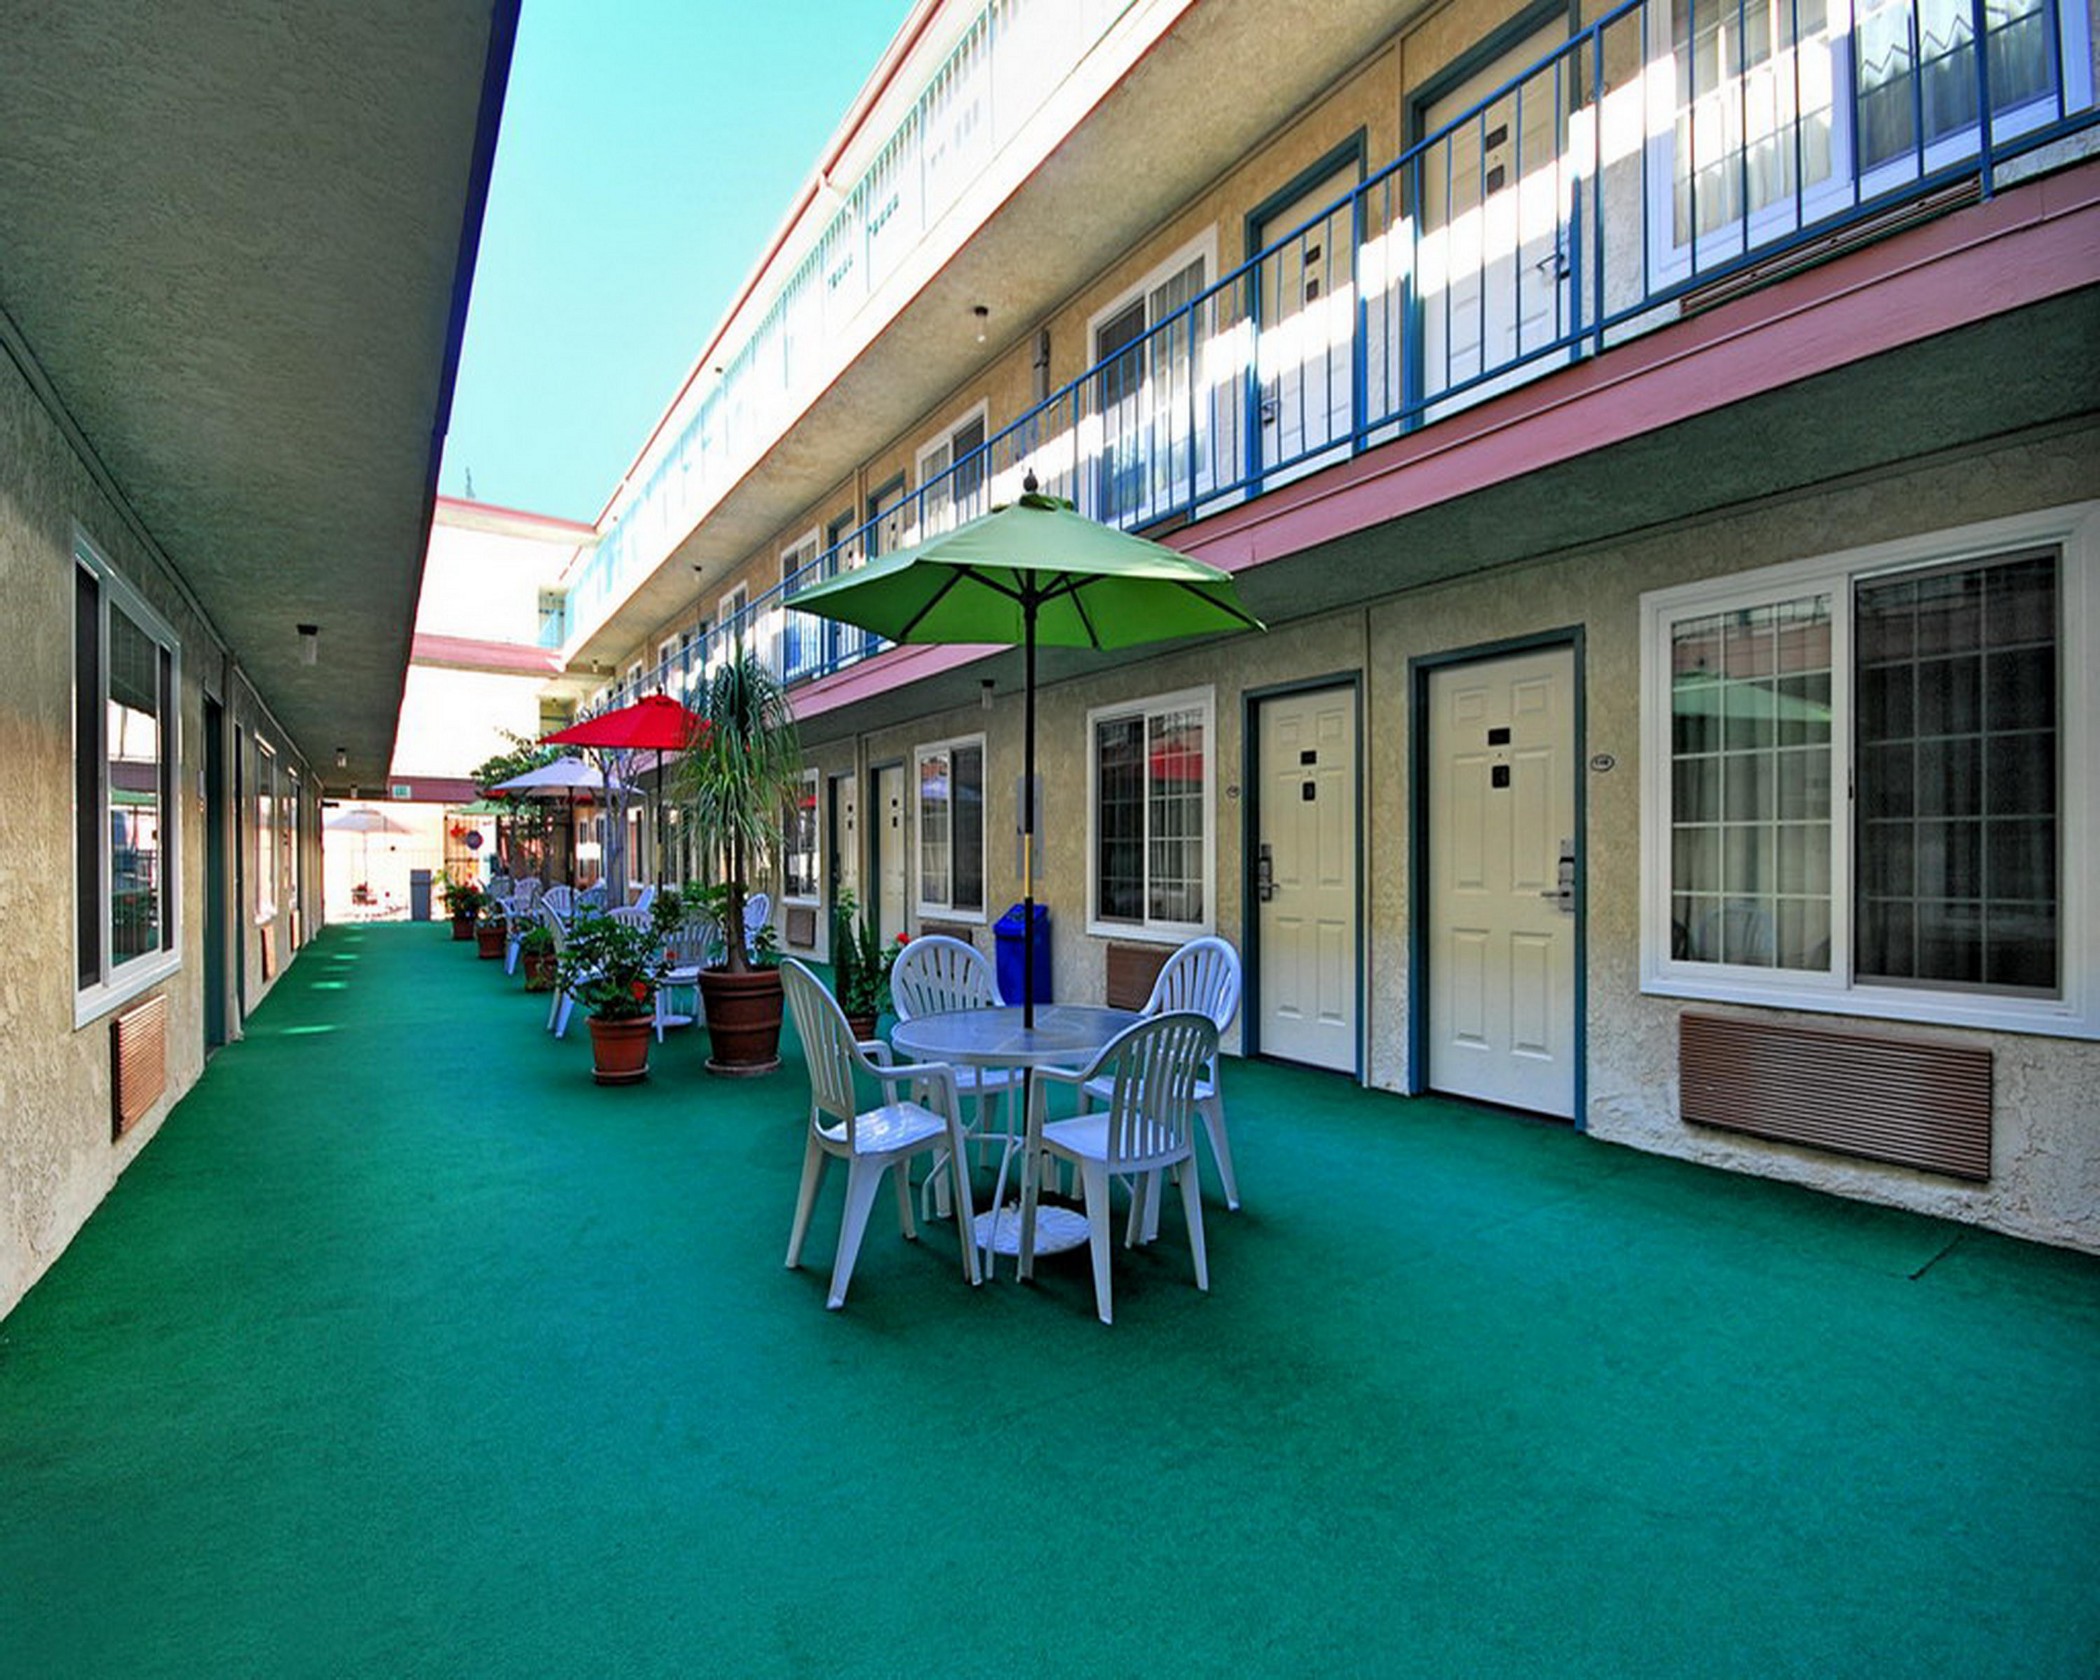 Comfort Inn in Santa Monica - West Los Angeles